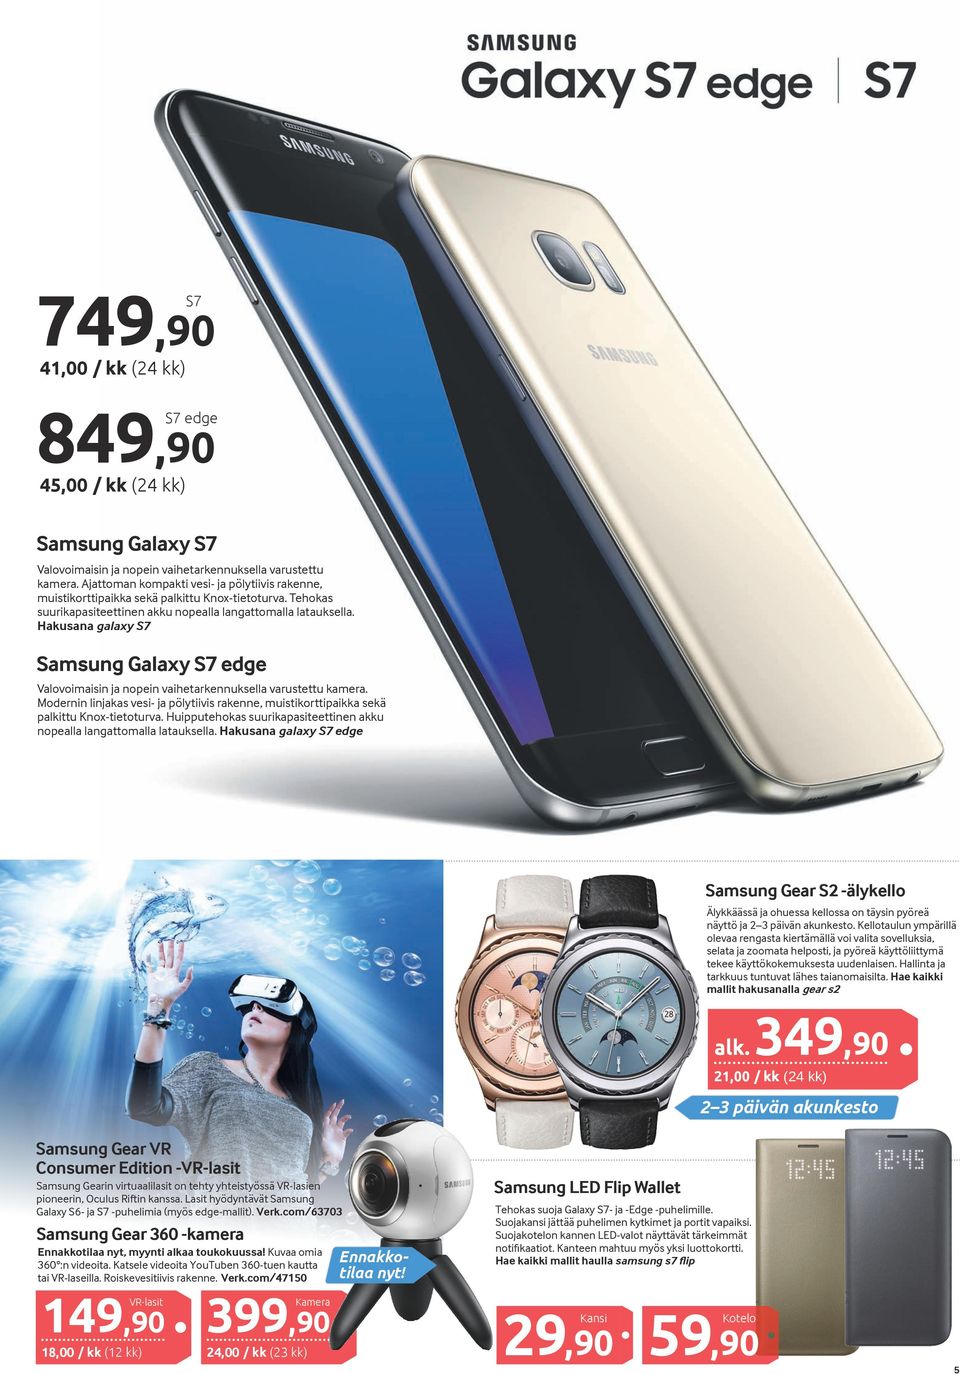 Hakusana galaxy S7 Samsung Galaxy S7 edge Valovoimaisin ja nopein vaihetarkennuksella varustettu kamera.